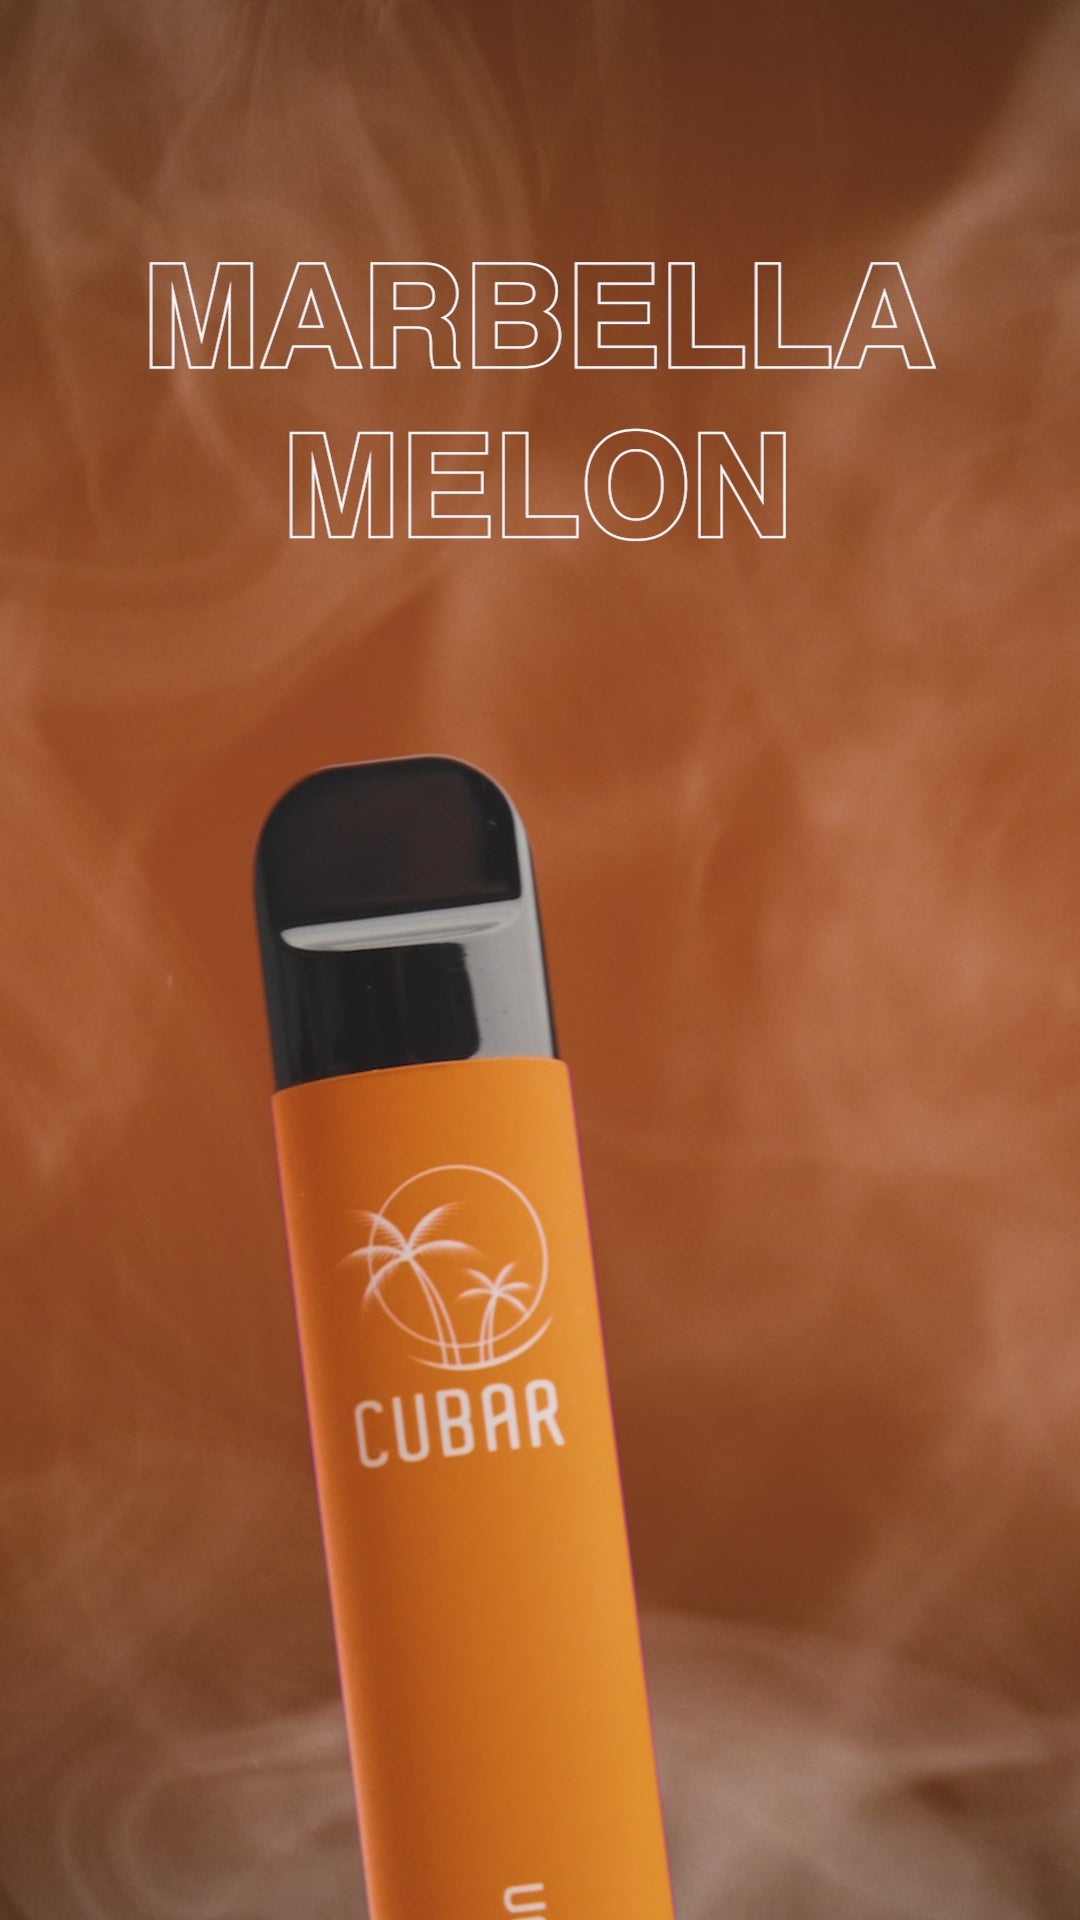 Cubar Club Marbella Melon Vape Stick Pen Einweg E-Zigarette Dampfen Werbevideo Video